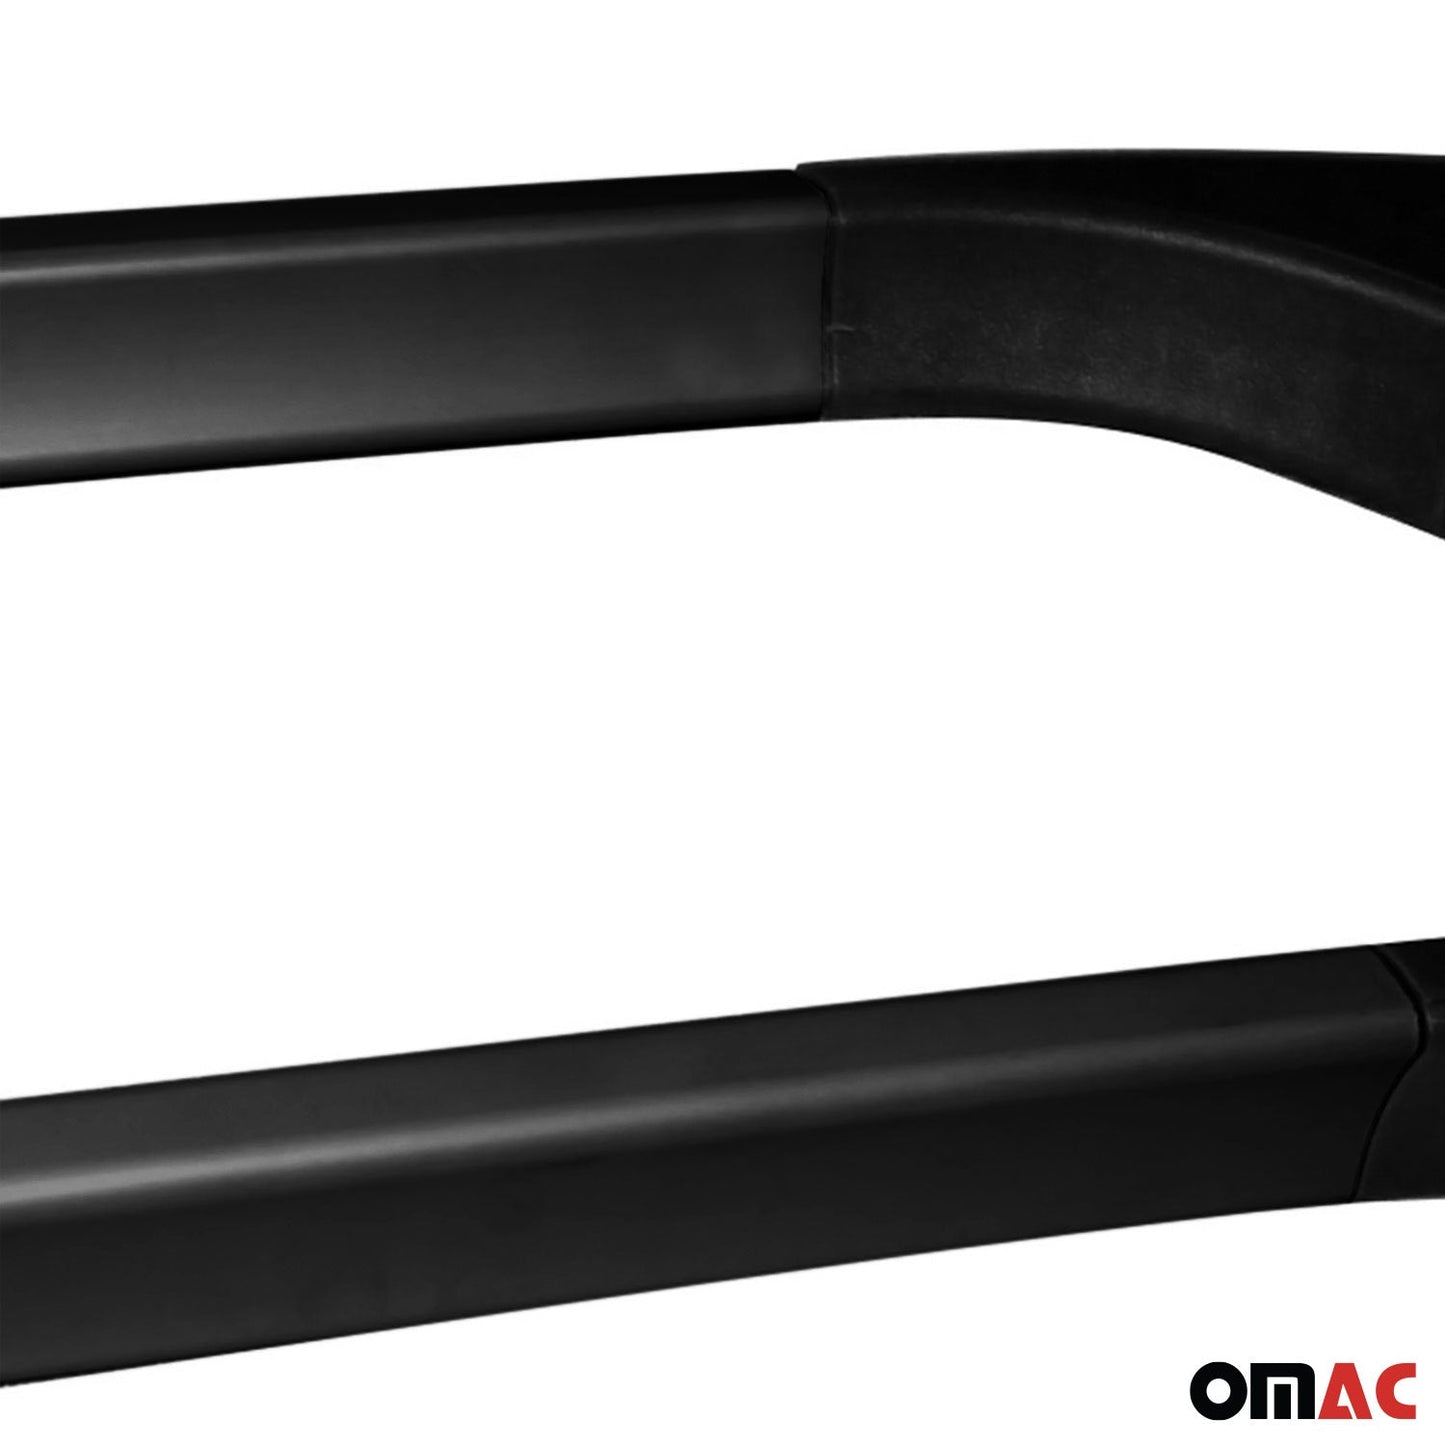 OMAC Roof Rack Side Rails Aluminium for Fiat 500L 2014-2020 Black 2 Pcs 7515934B